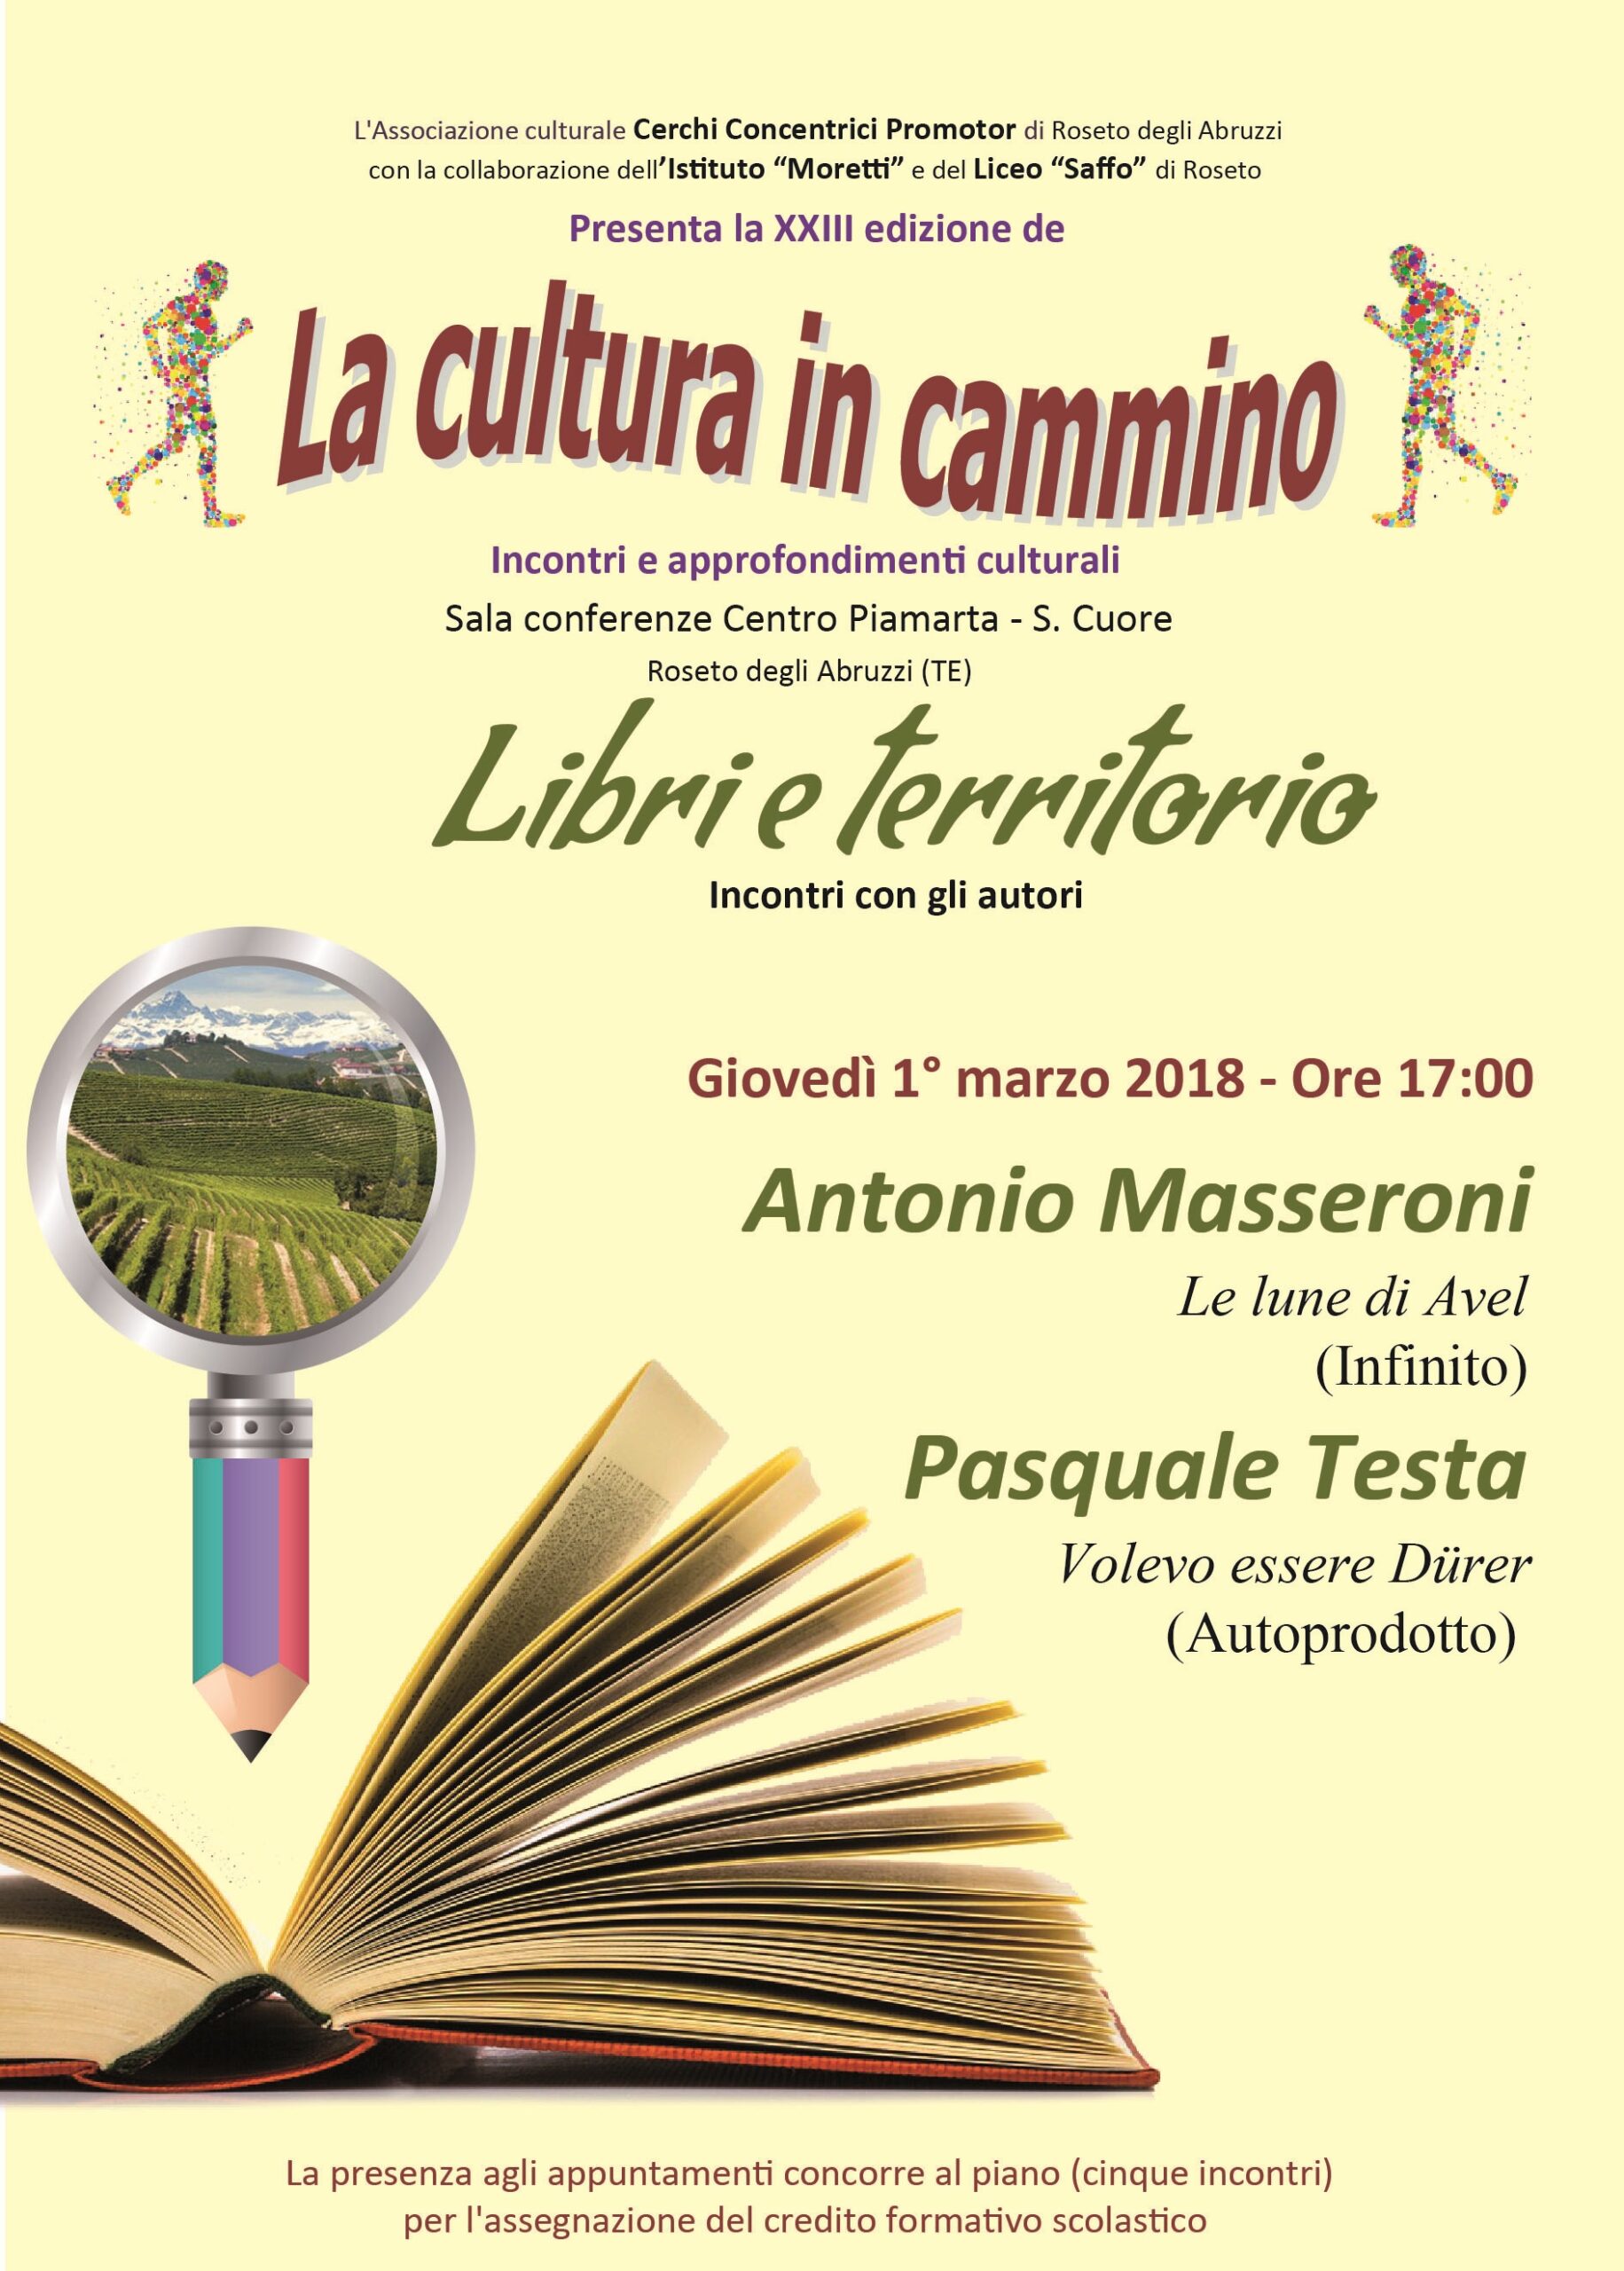 Roseto.XXXIII edizione ” La Cultura in cammino”: appuntamento con Antonio Masseroni e Pasquale Testa